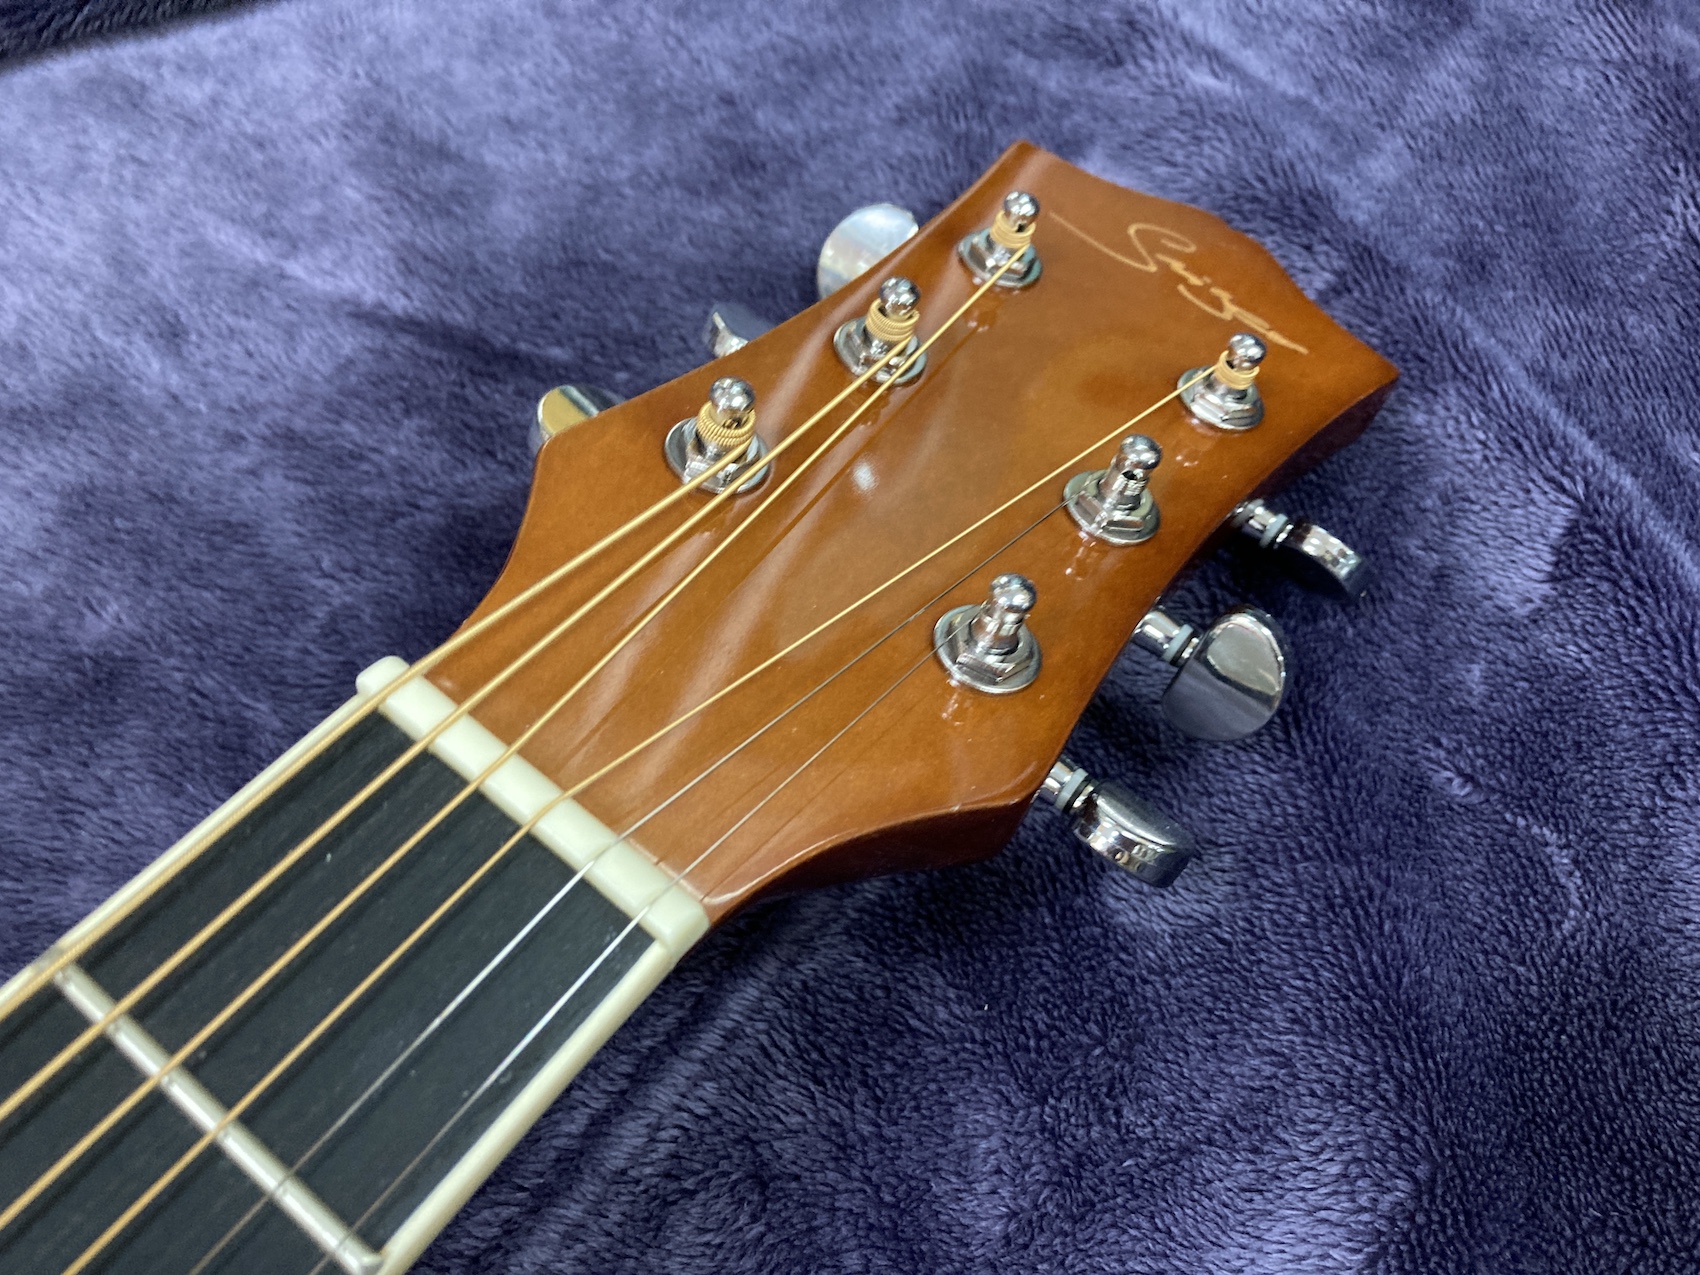 アコギ アコースティックギター Acoustic Guitar Smiger Smaile Singer 楽器 音楽 機材 Music 弦 木 木材 かっこいい 調整済み Nerodesign Com Br